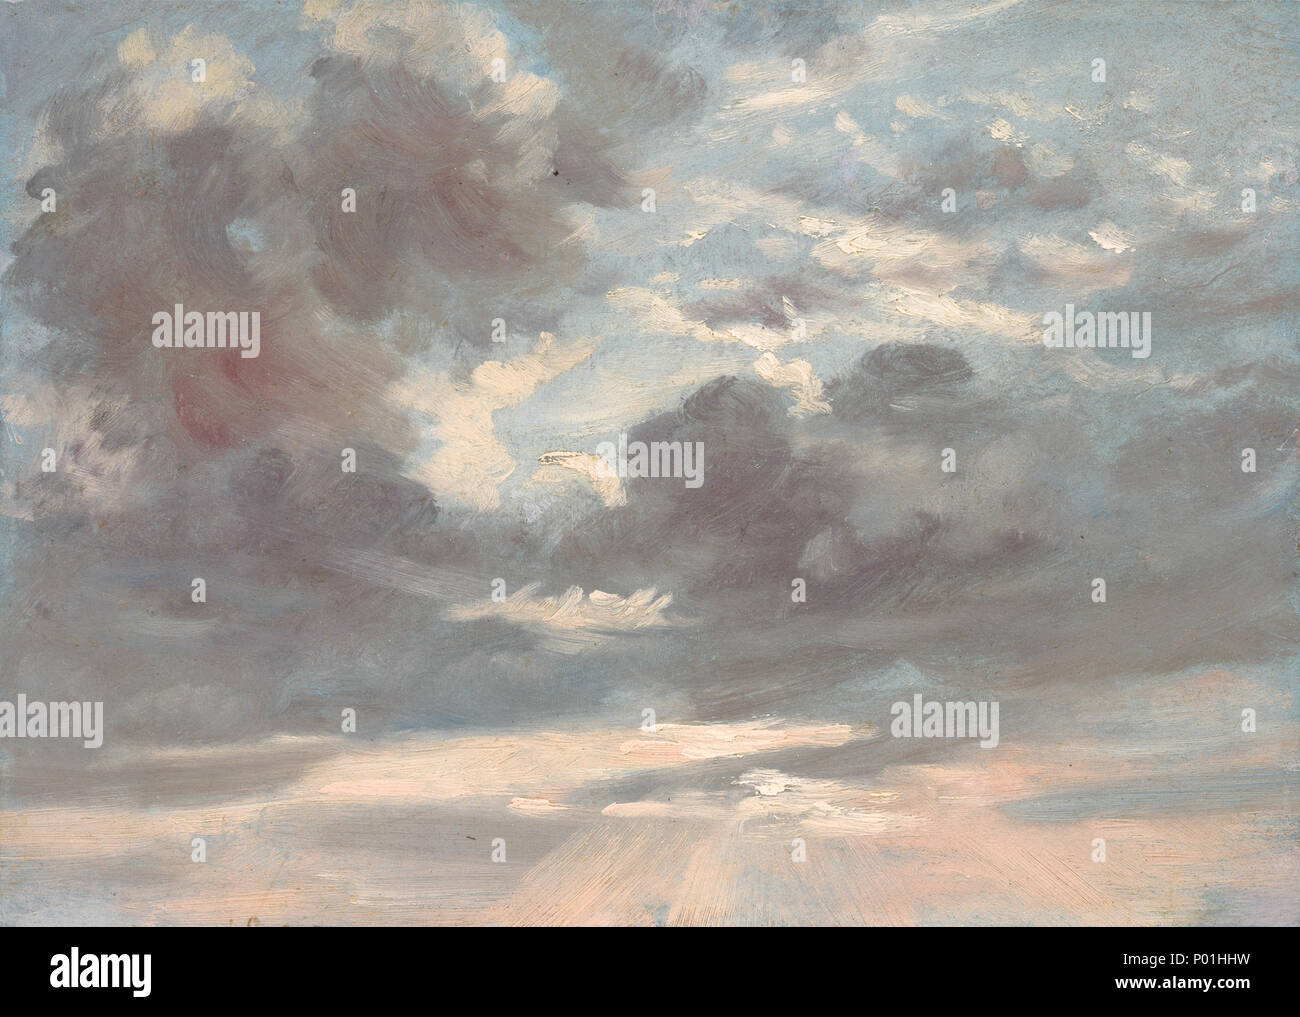 John Constable (britannique, 1776 - 1837 ), de l'étude nuage orageux : Coucher de soleil, 1821-1822, huile sur papier sur toile, don de Louise Mellon en l'honneur de M. et Mme Paul Mellon 7 Étude de nuages Coucher de soleil orageux E10206 Banque D'Images